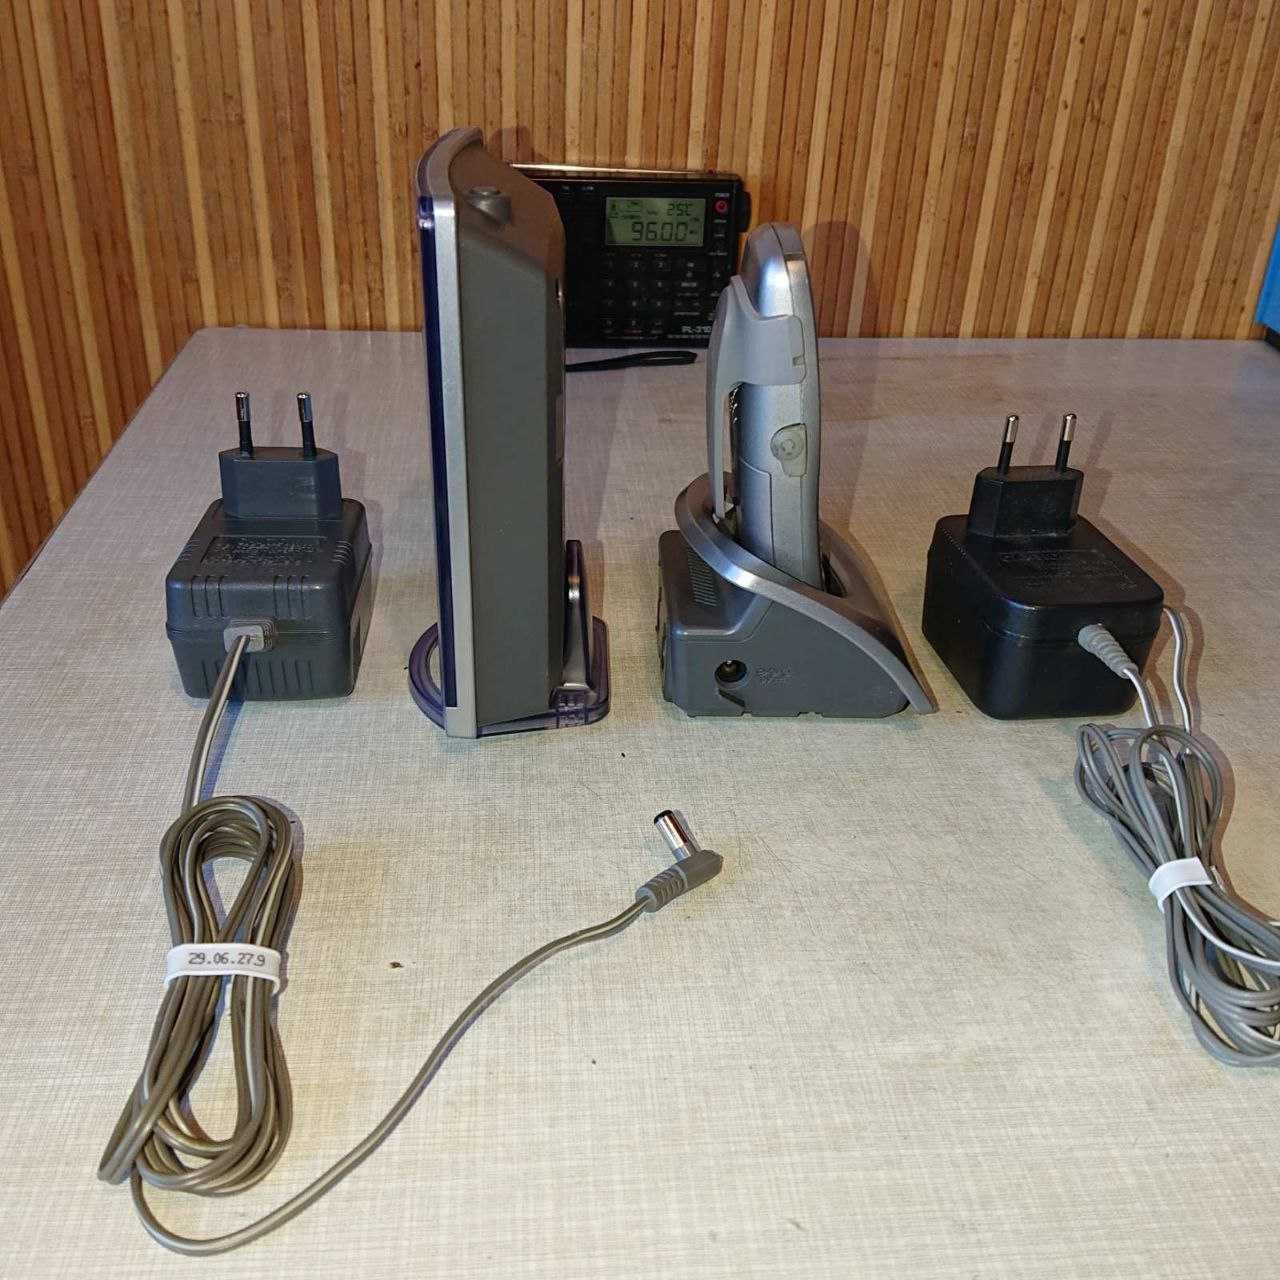 телефон з переносн трубкою і зарядними пристроями для трубки і станції